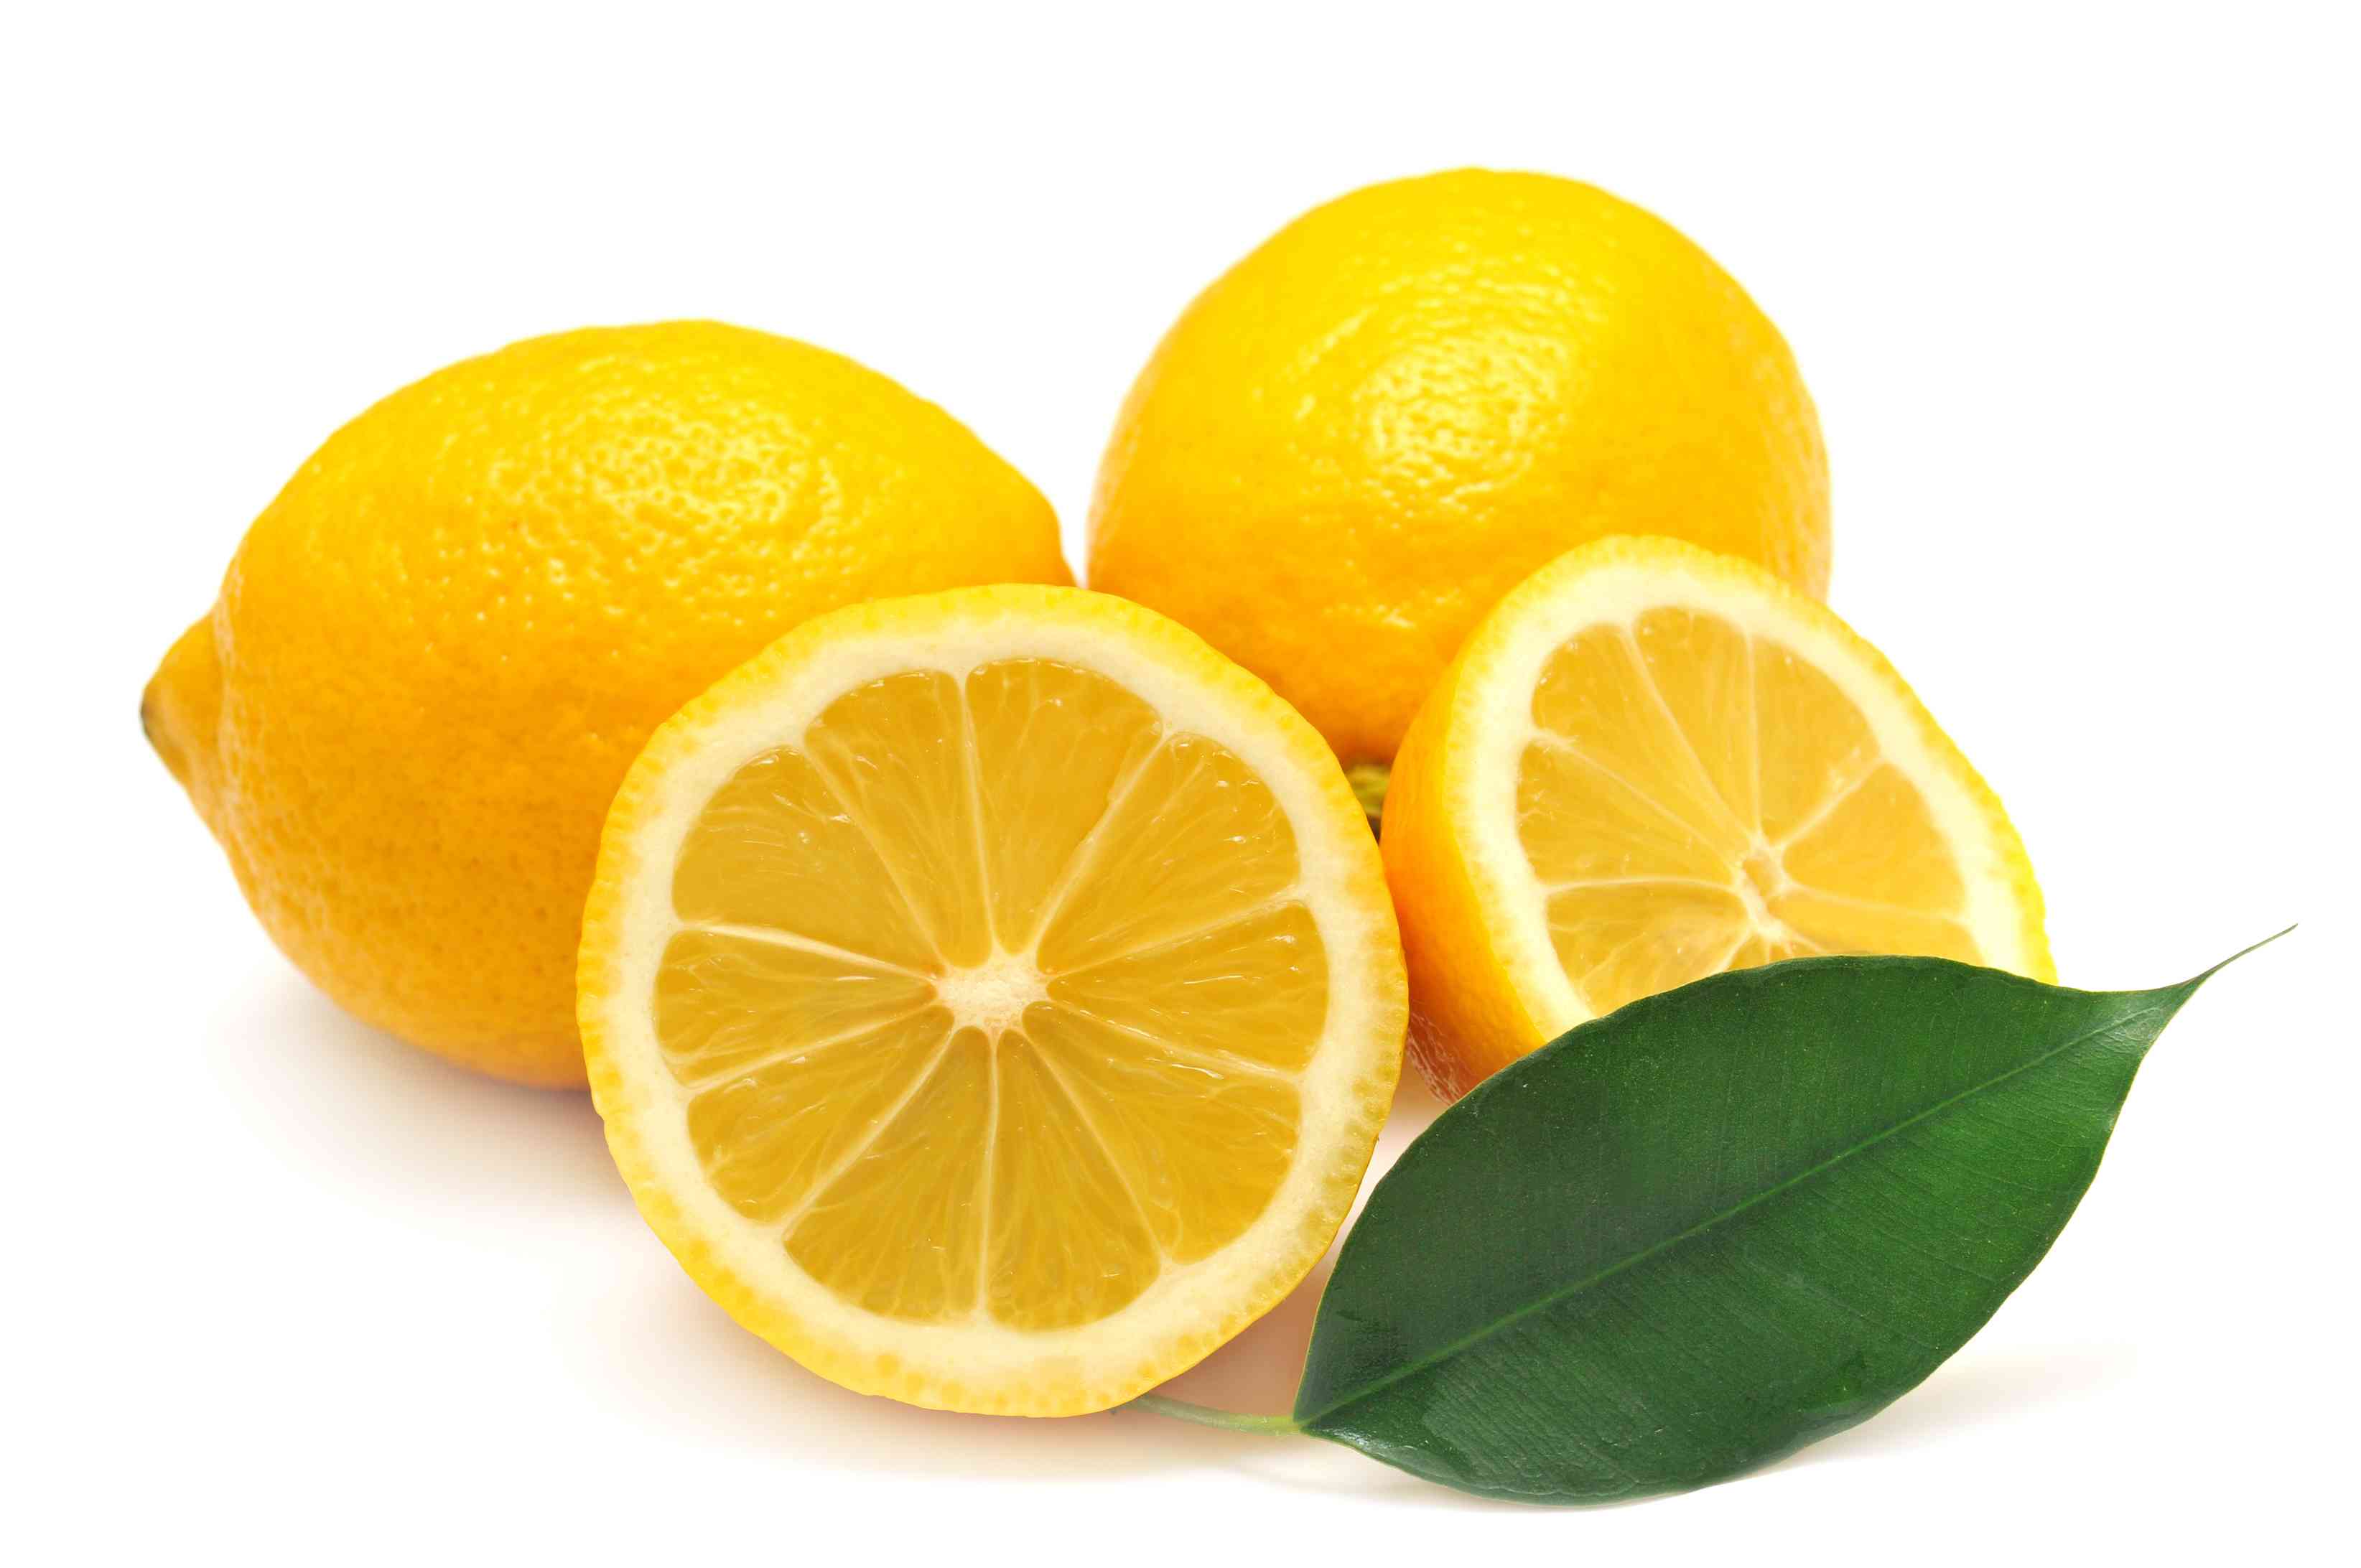 Manfaat-buah-lemon-untuk-kesehatan-dan-kecantikan